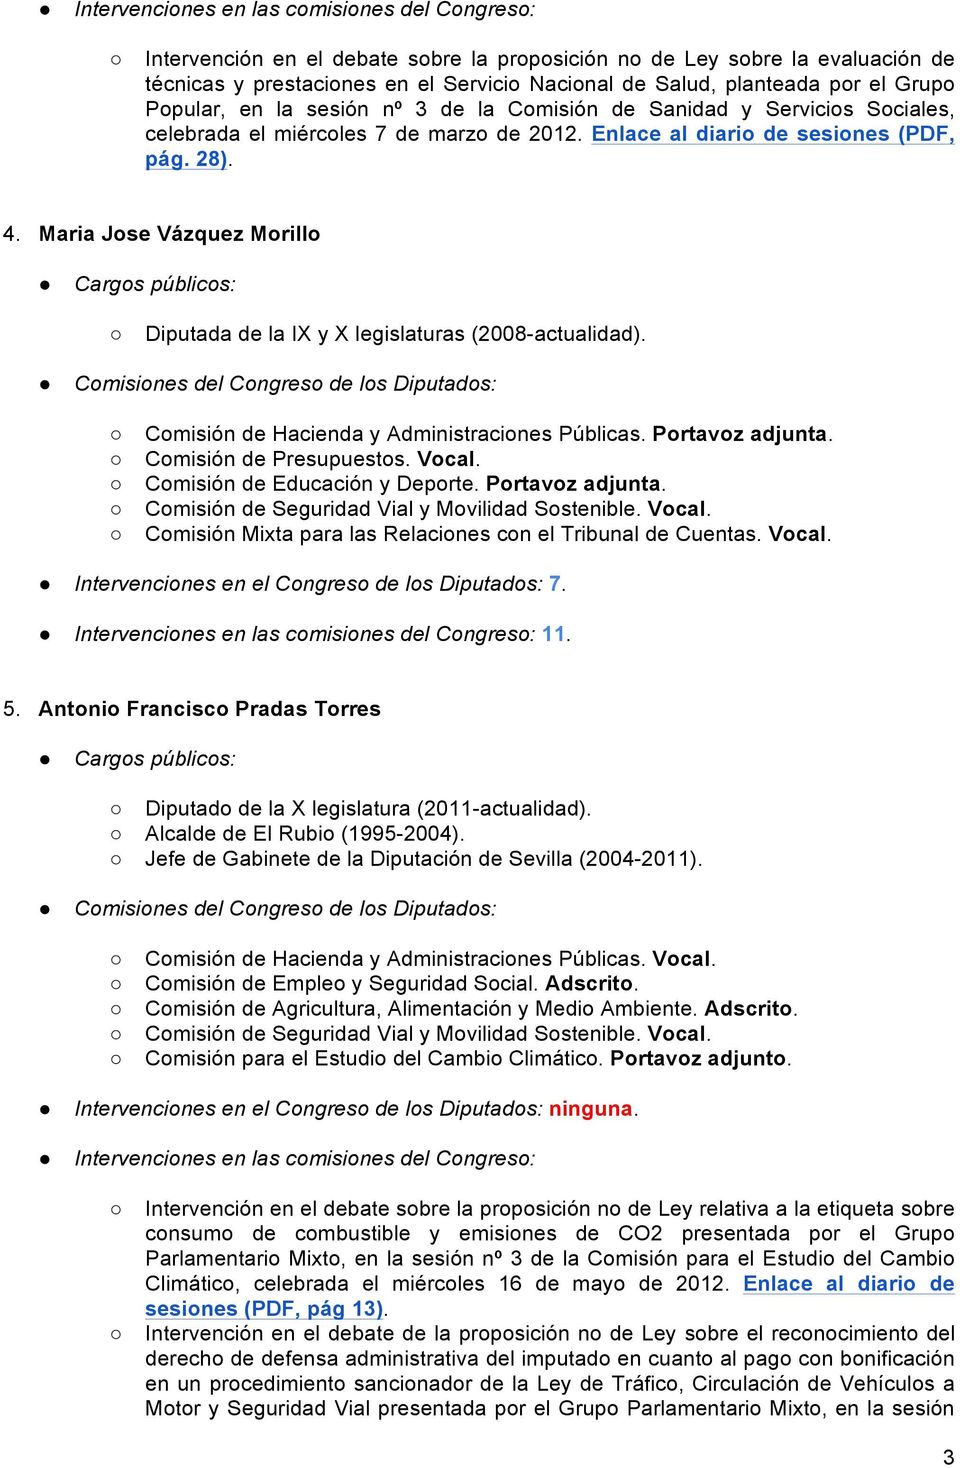 Maria Jose Vázquez Morillo Diputada de la IX y X legislaturas (2008-actualidad). Comisión de Hacienda y Administraciones Públicas. Portavoz adjunta. Comisión de Presupuestos. Vocal.